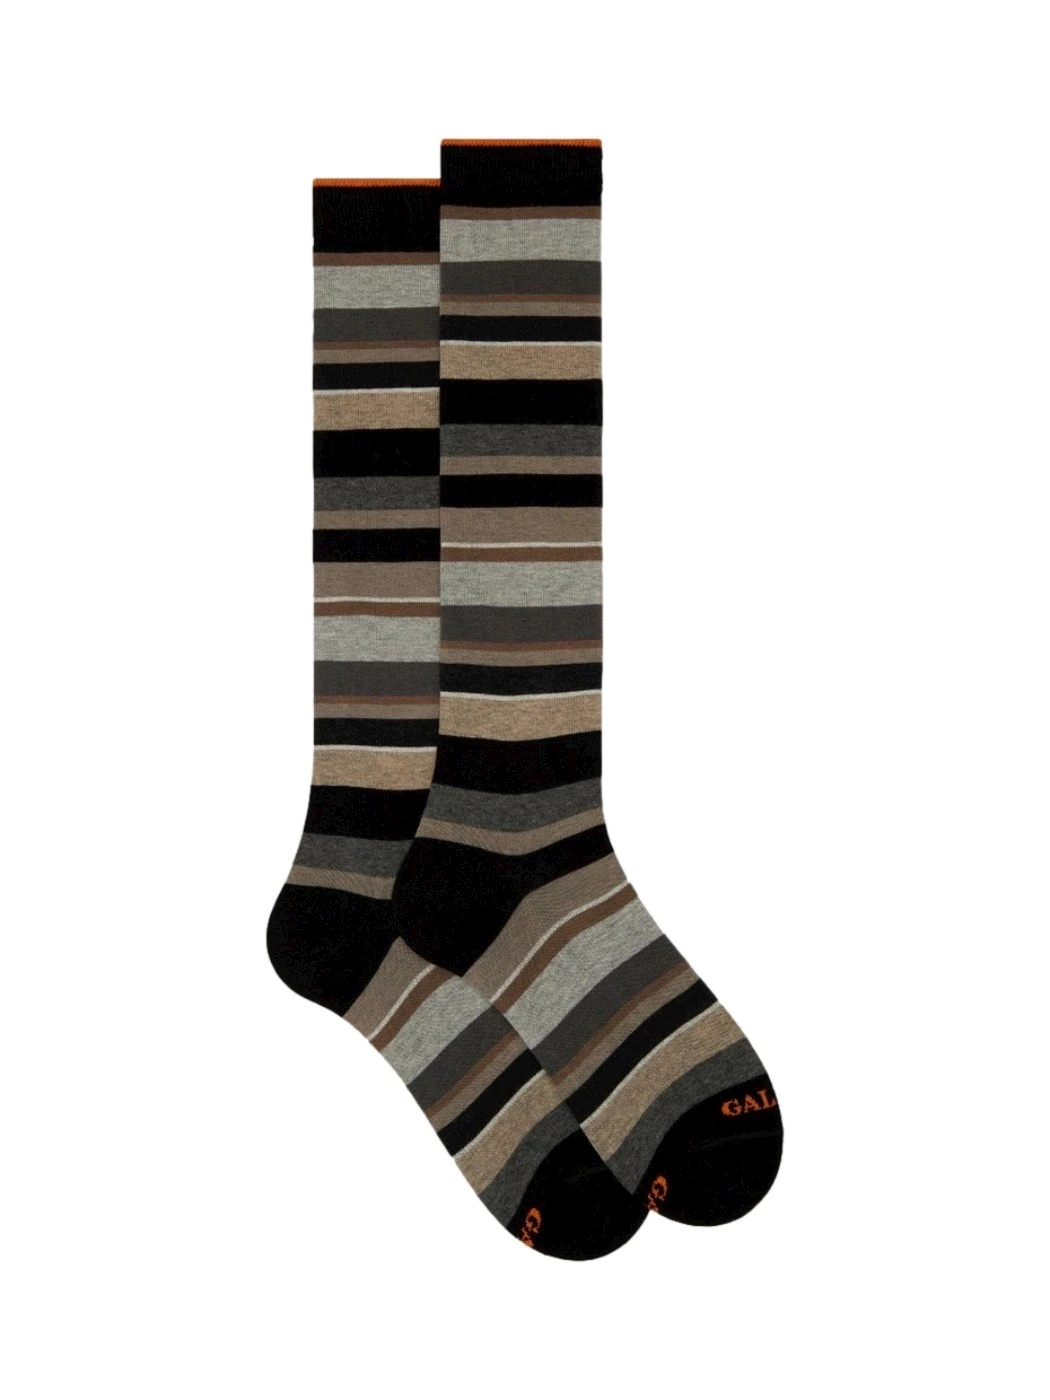 Men's long socks cotton striped multicolor Gallo